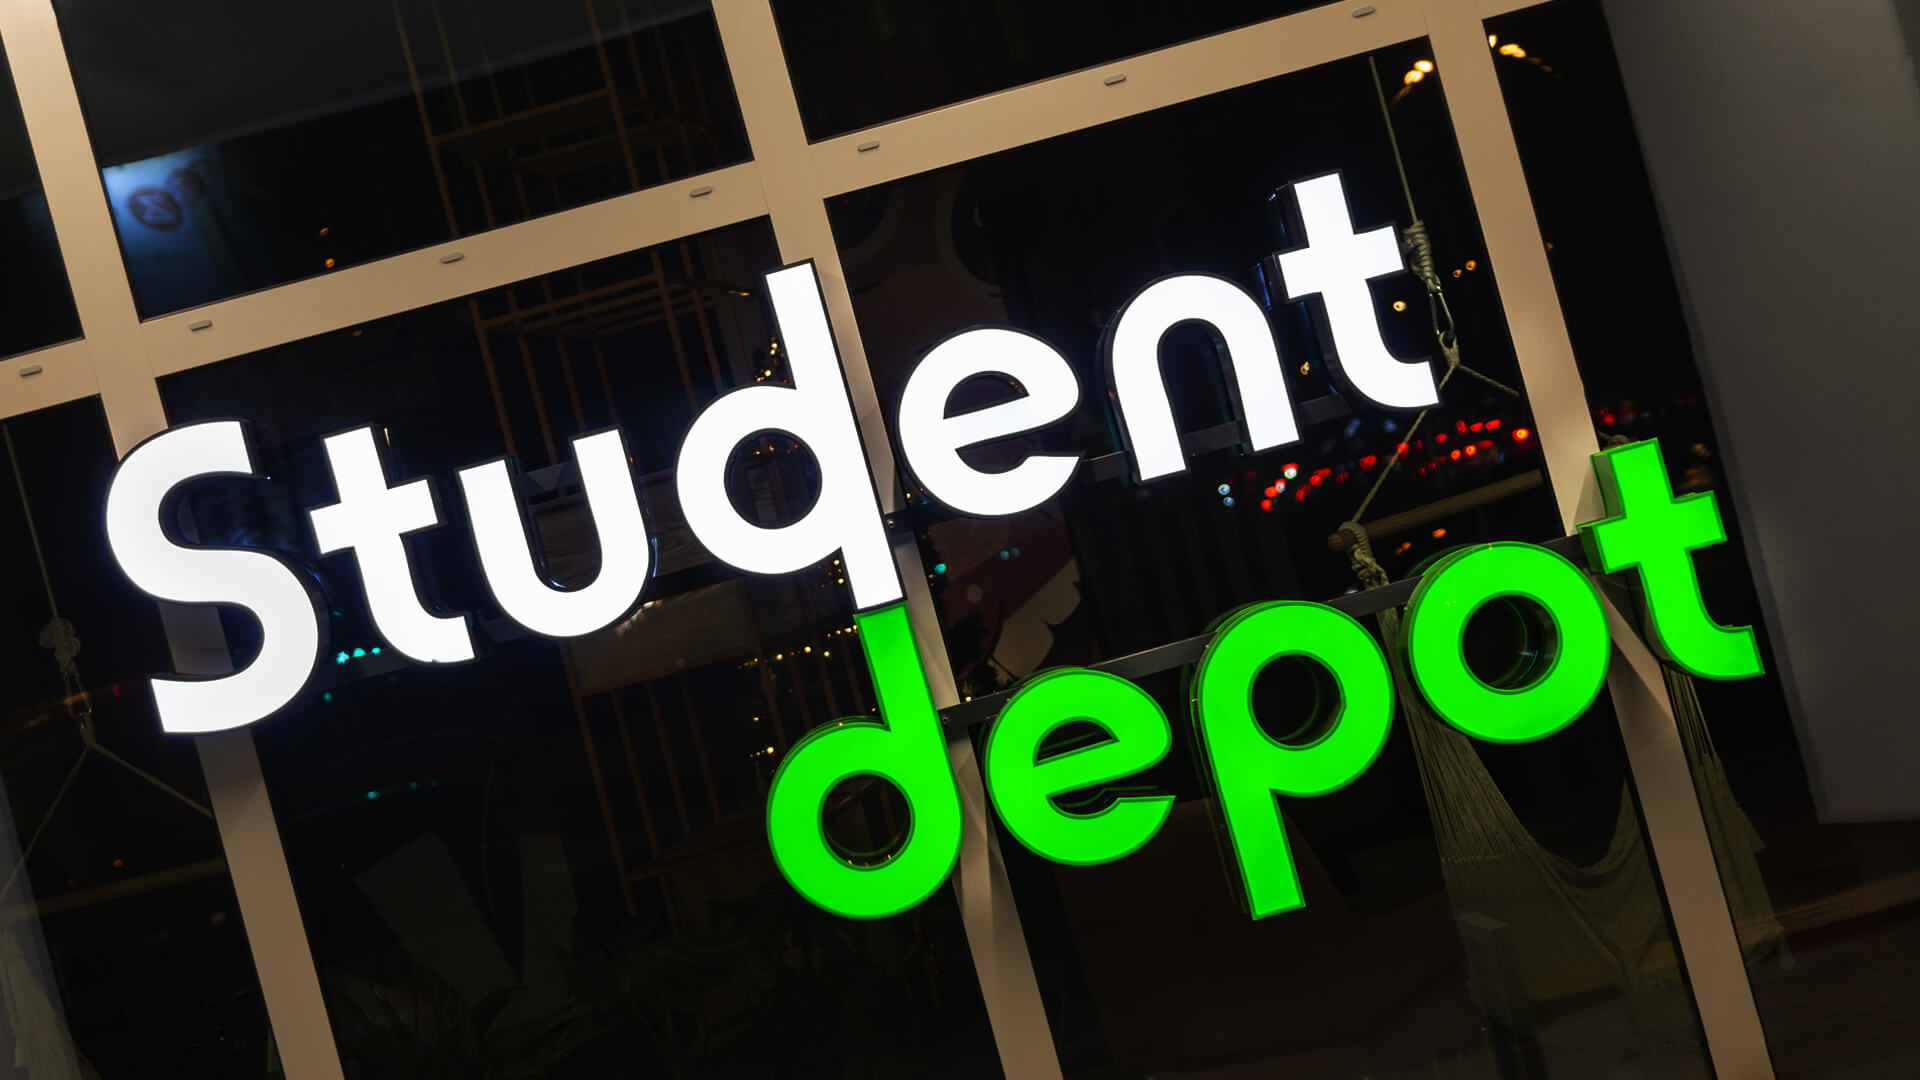 dépôt de dépôt étudiant  - étudiant-depot-spatial-lettre-lettre-dans-l'entrée-lettre-sur-le-rail-lettre-sur-la-plaque-verte-lettre-sur-l'ordre-logo-lettre-firme-lettre-sur-la-hauteur-lettre-de-plexi-gdansk (1)